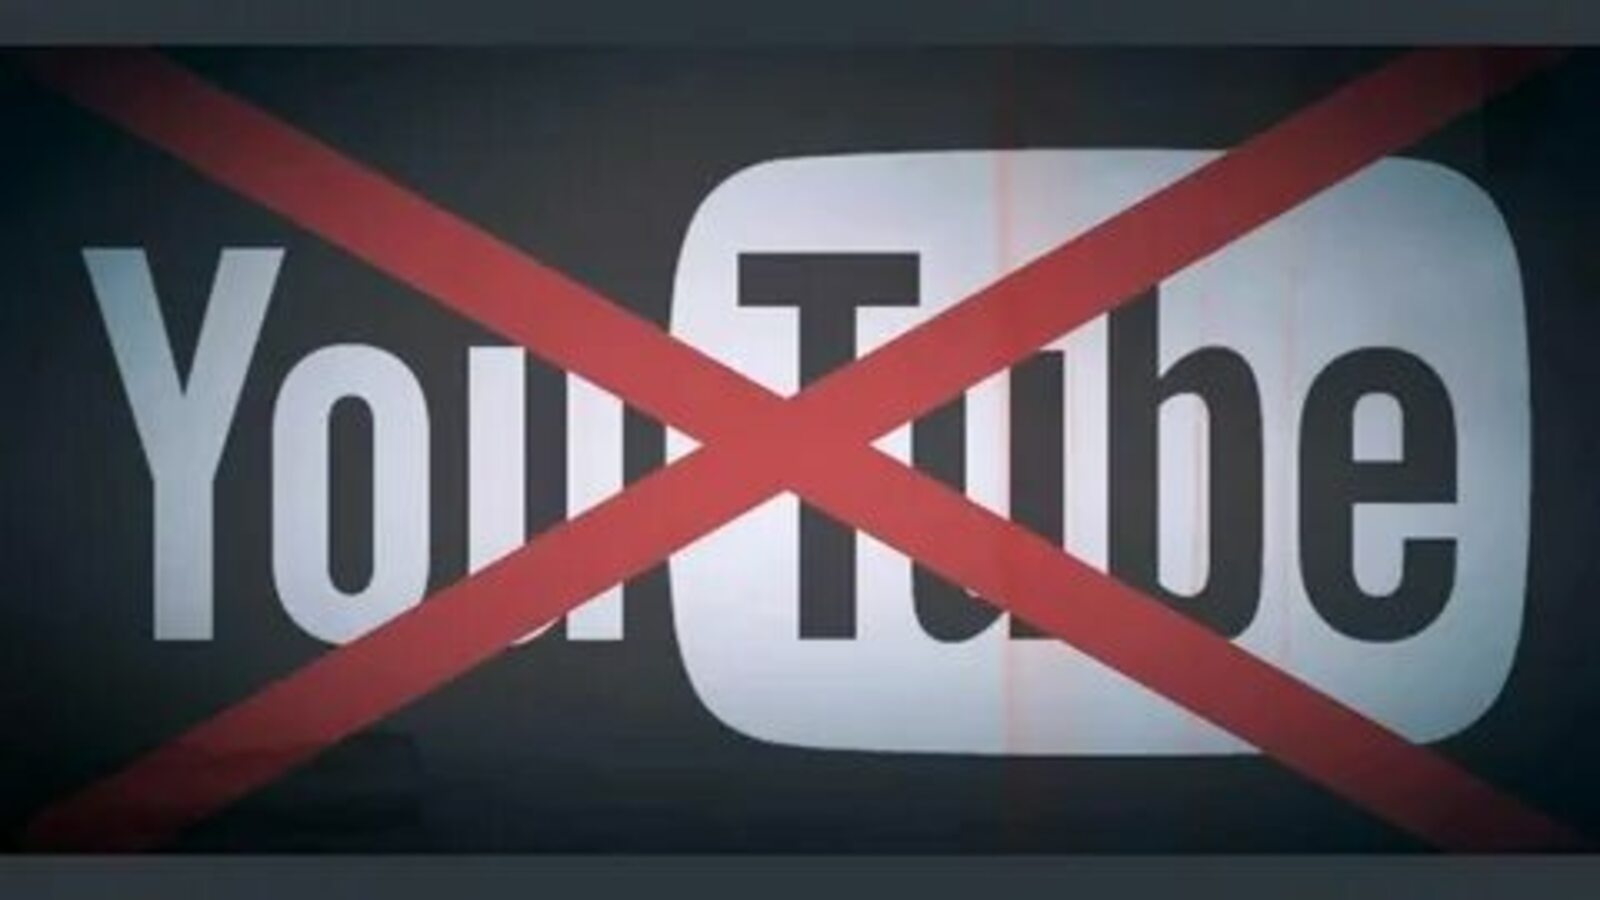 Публикация антироссийского контента на Youtube противоречит Всеобщей декларации прав человека – политолог из Башкортостана